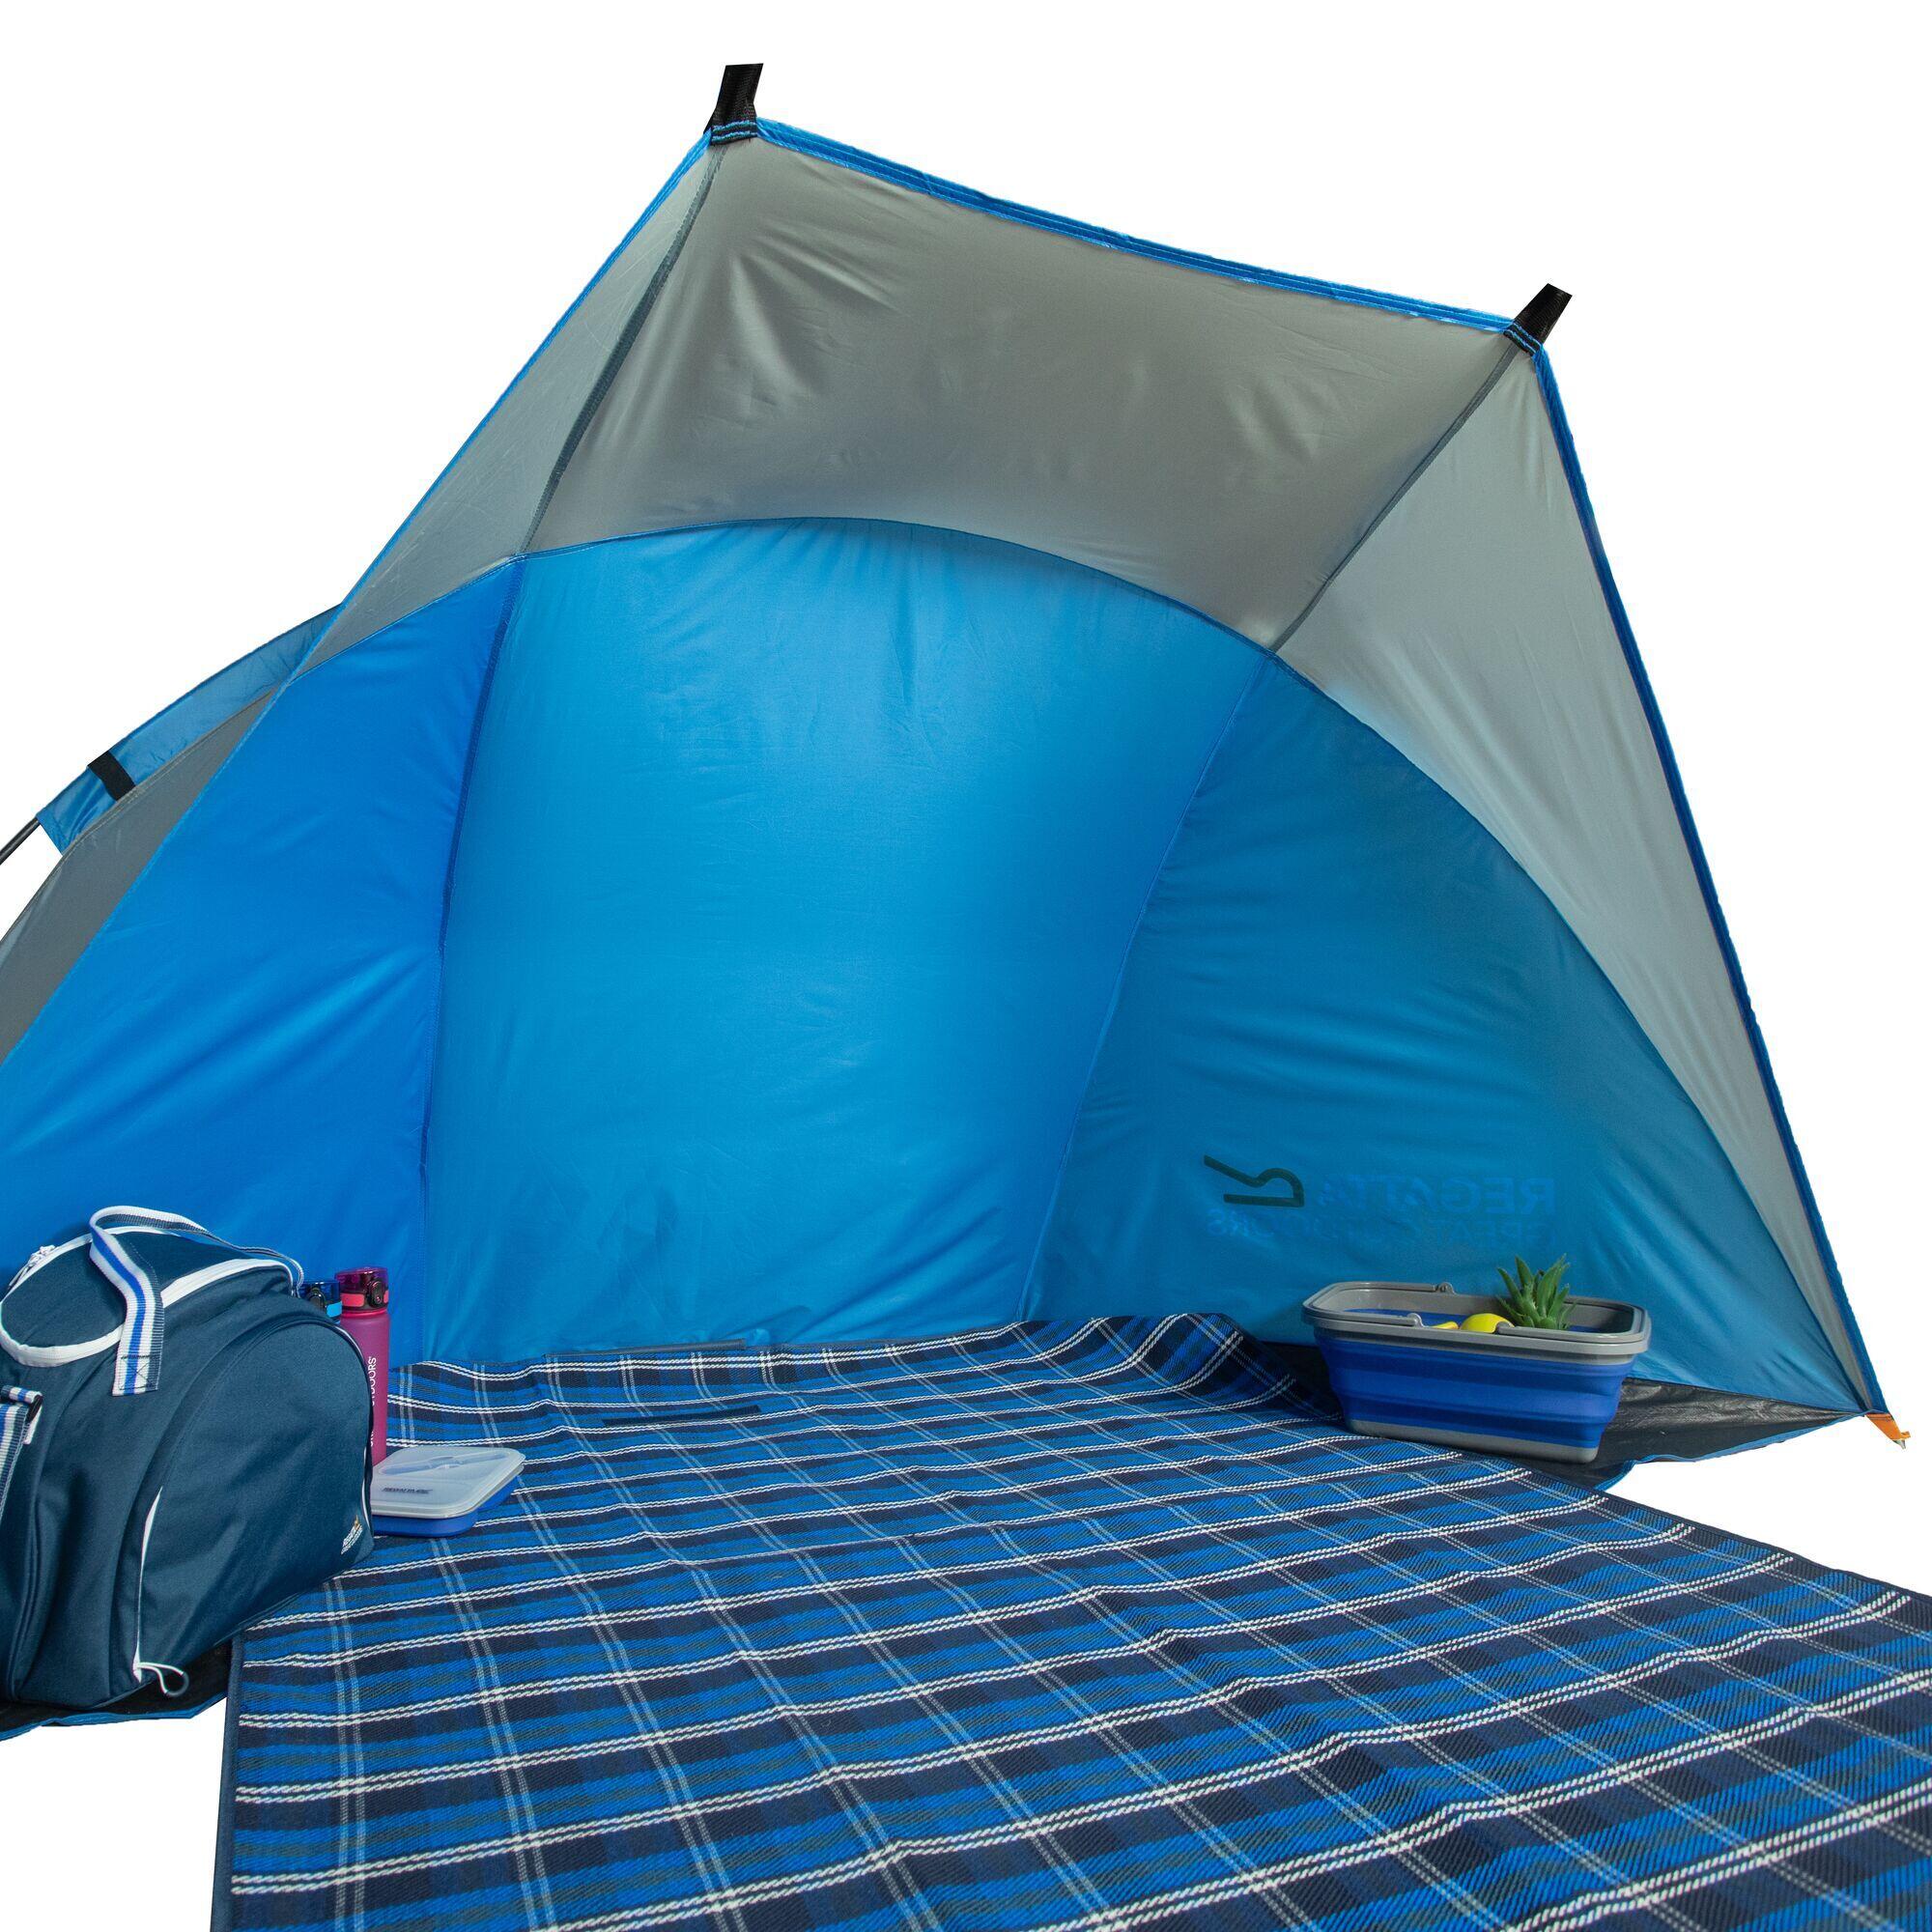 Tahiti Adults' Camping Beach Shelter - Oxford Blue Seal Grey 4/7